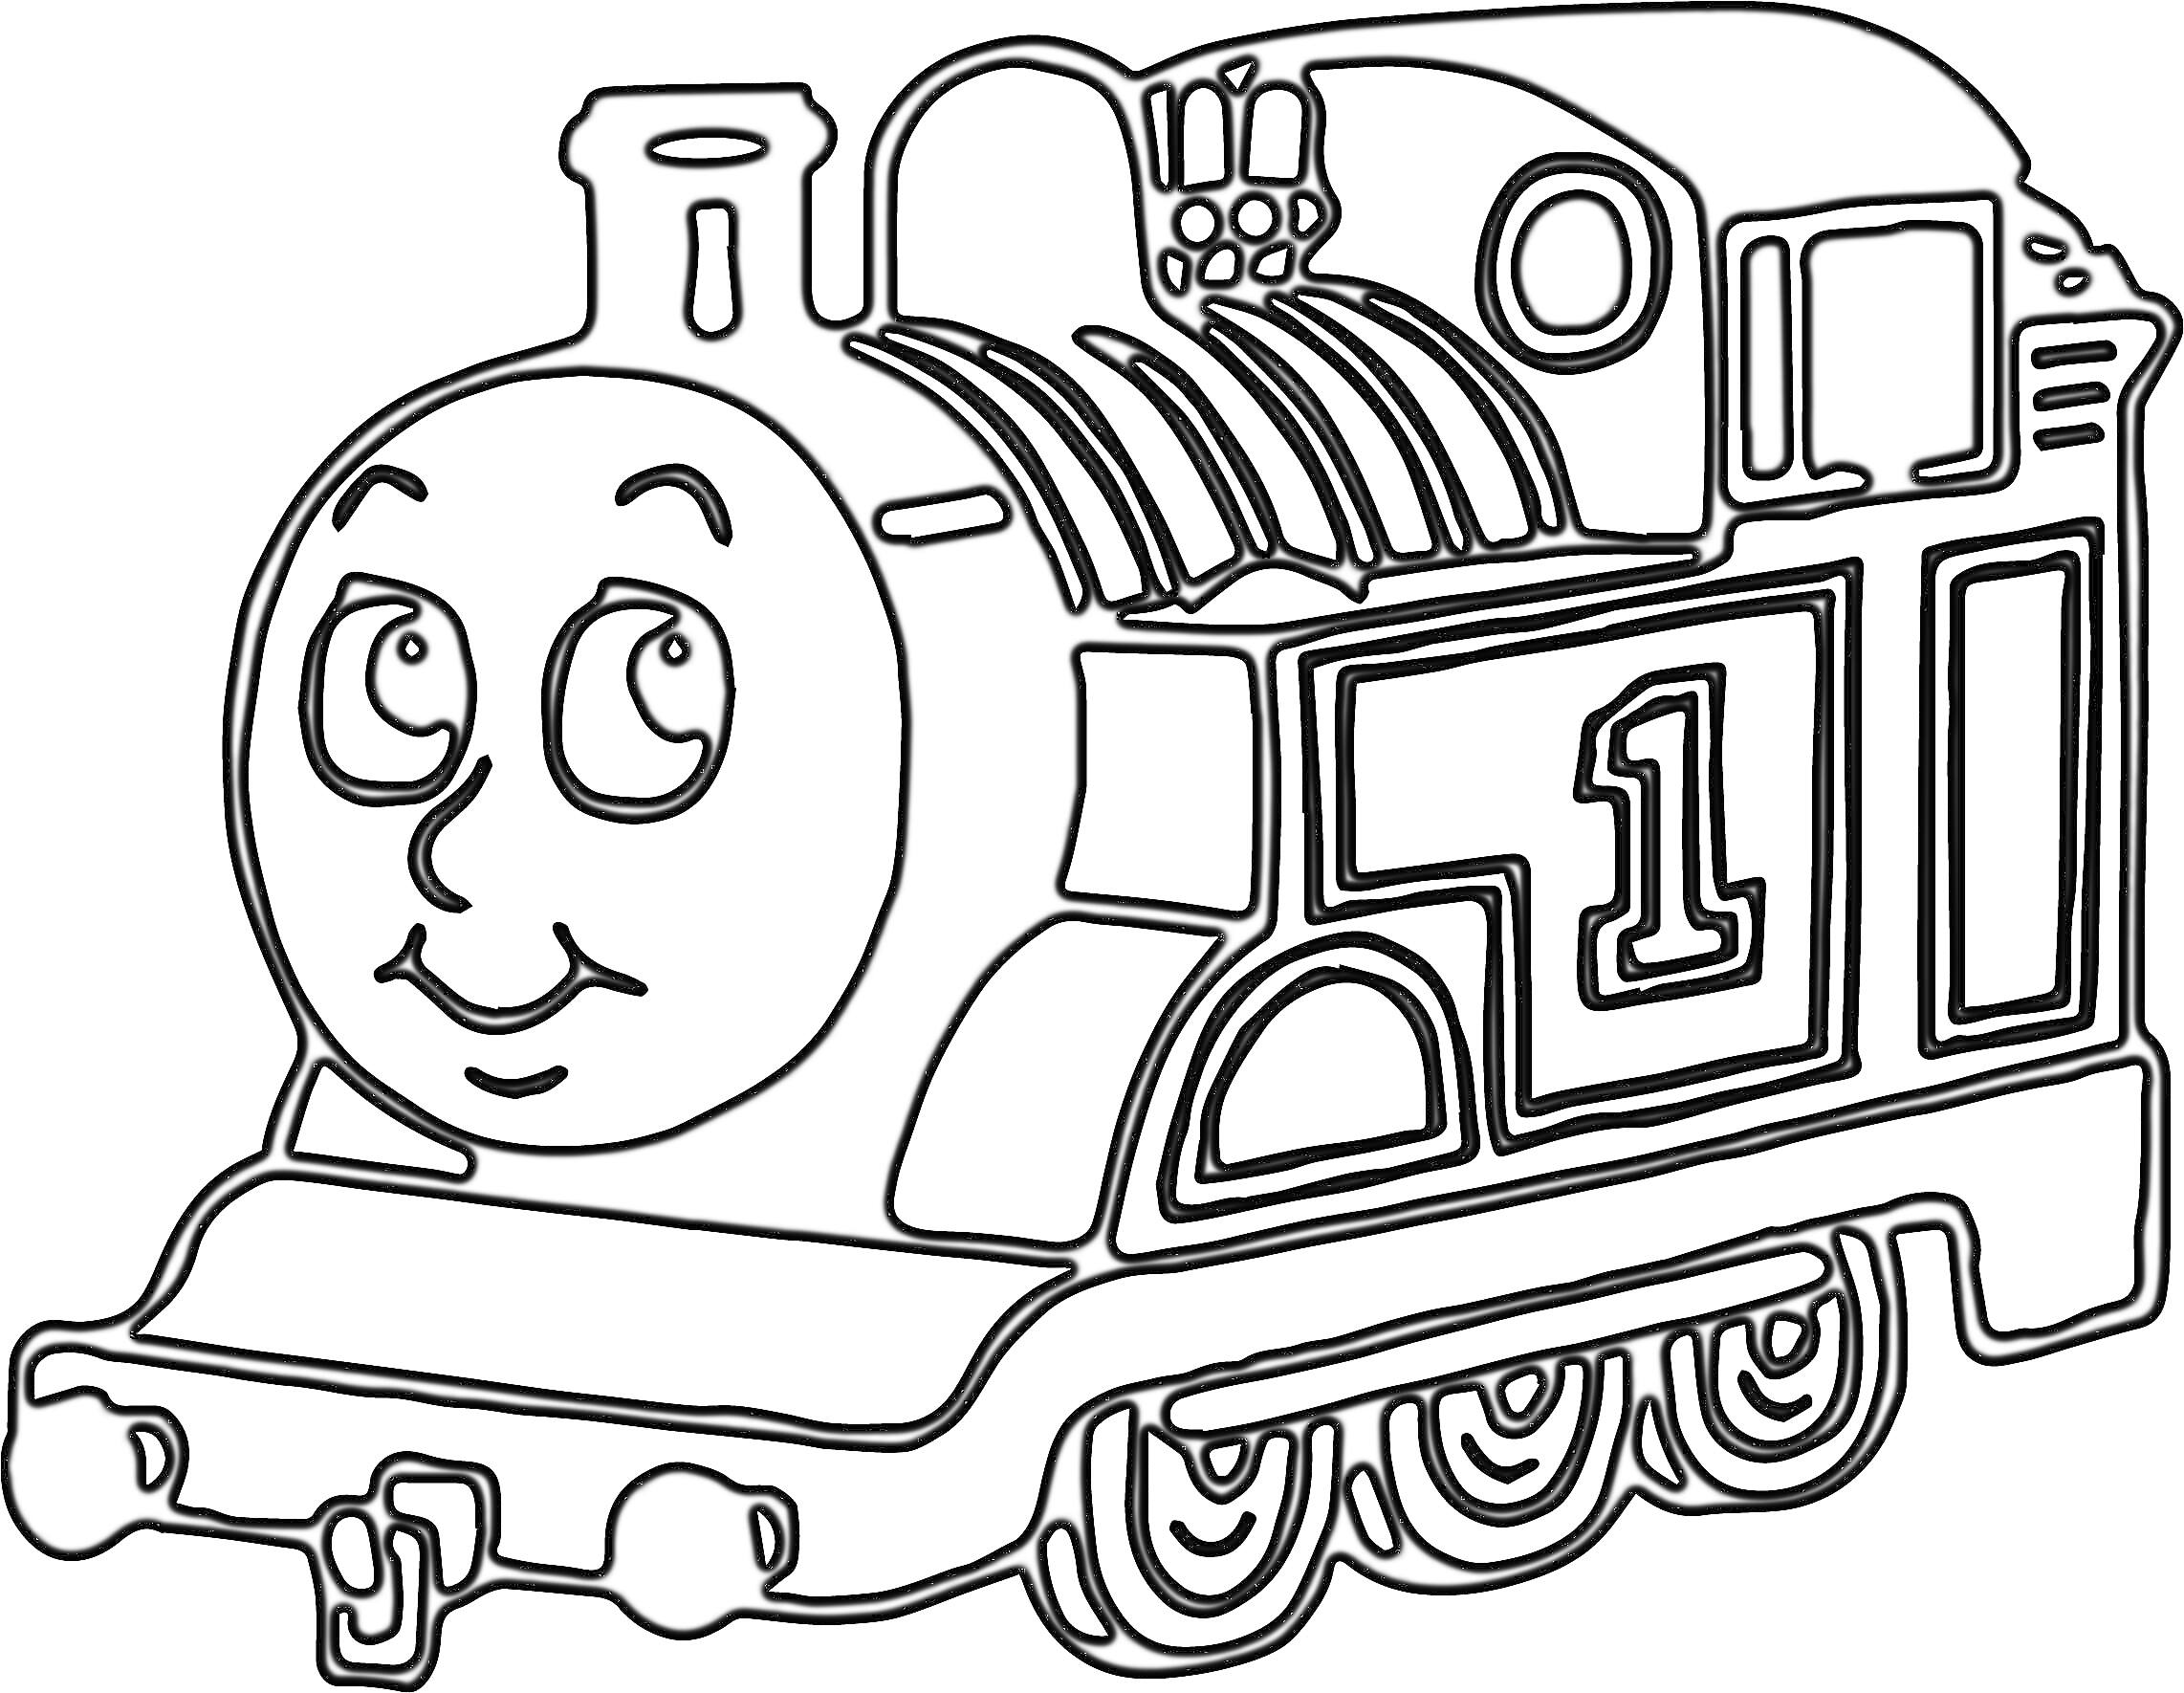 Раскраска Паровозик Томас с номером 1, улыбается, с пятью колесами